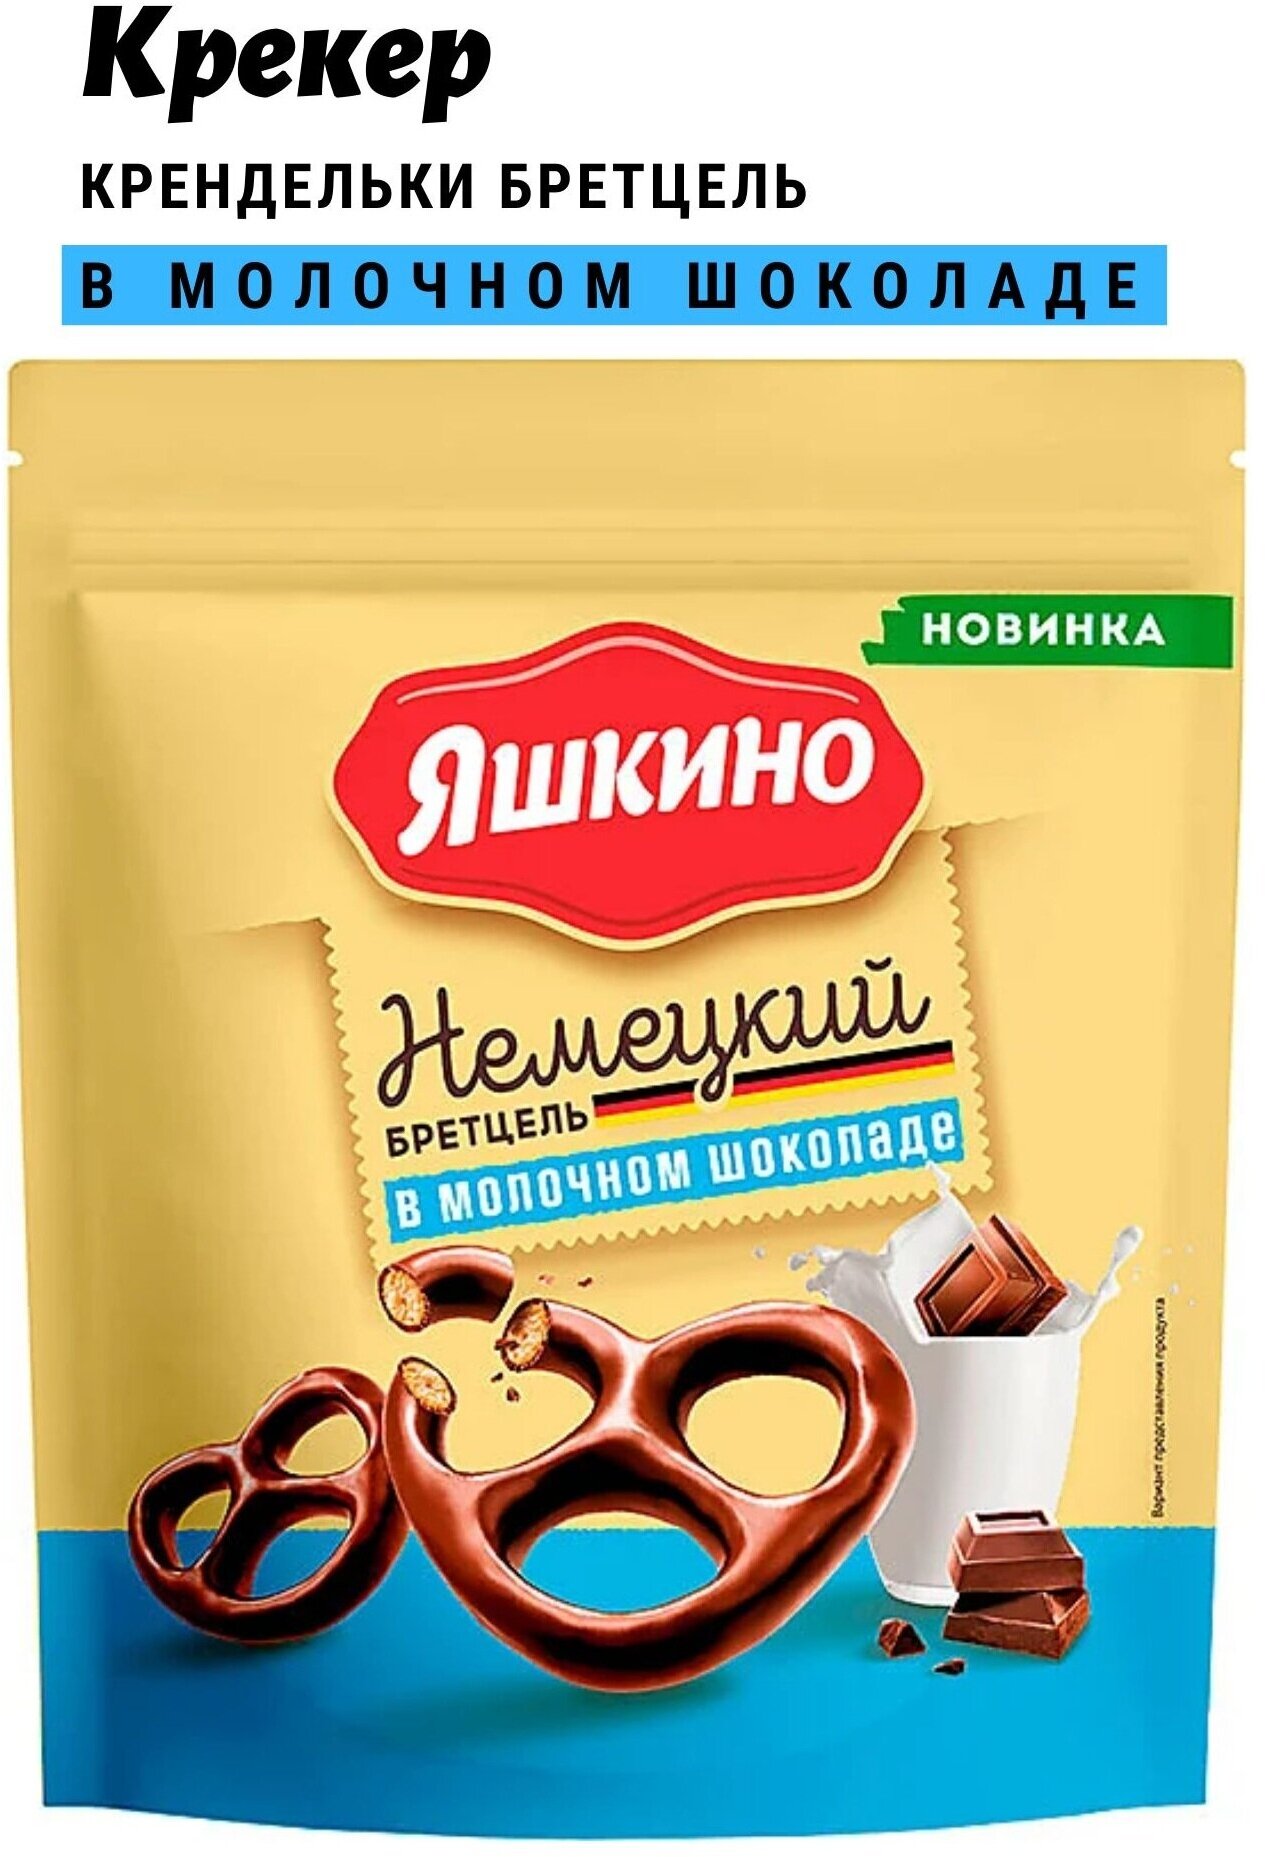 Печенье Яшкино Крендельки Немецкий Бретцель в молочном шоколаде, 3шт*150 г